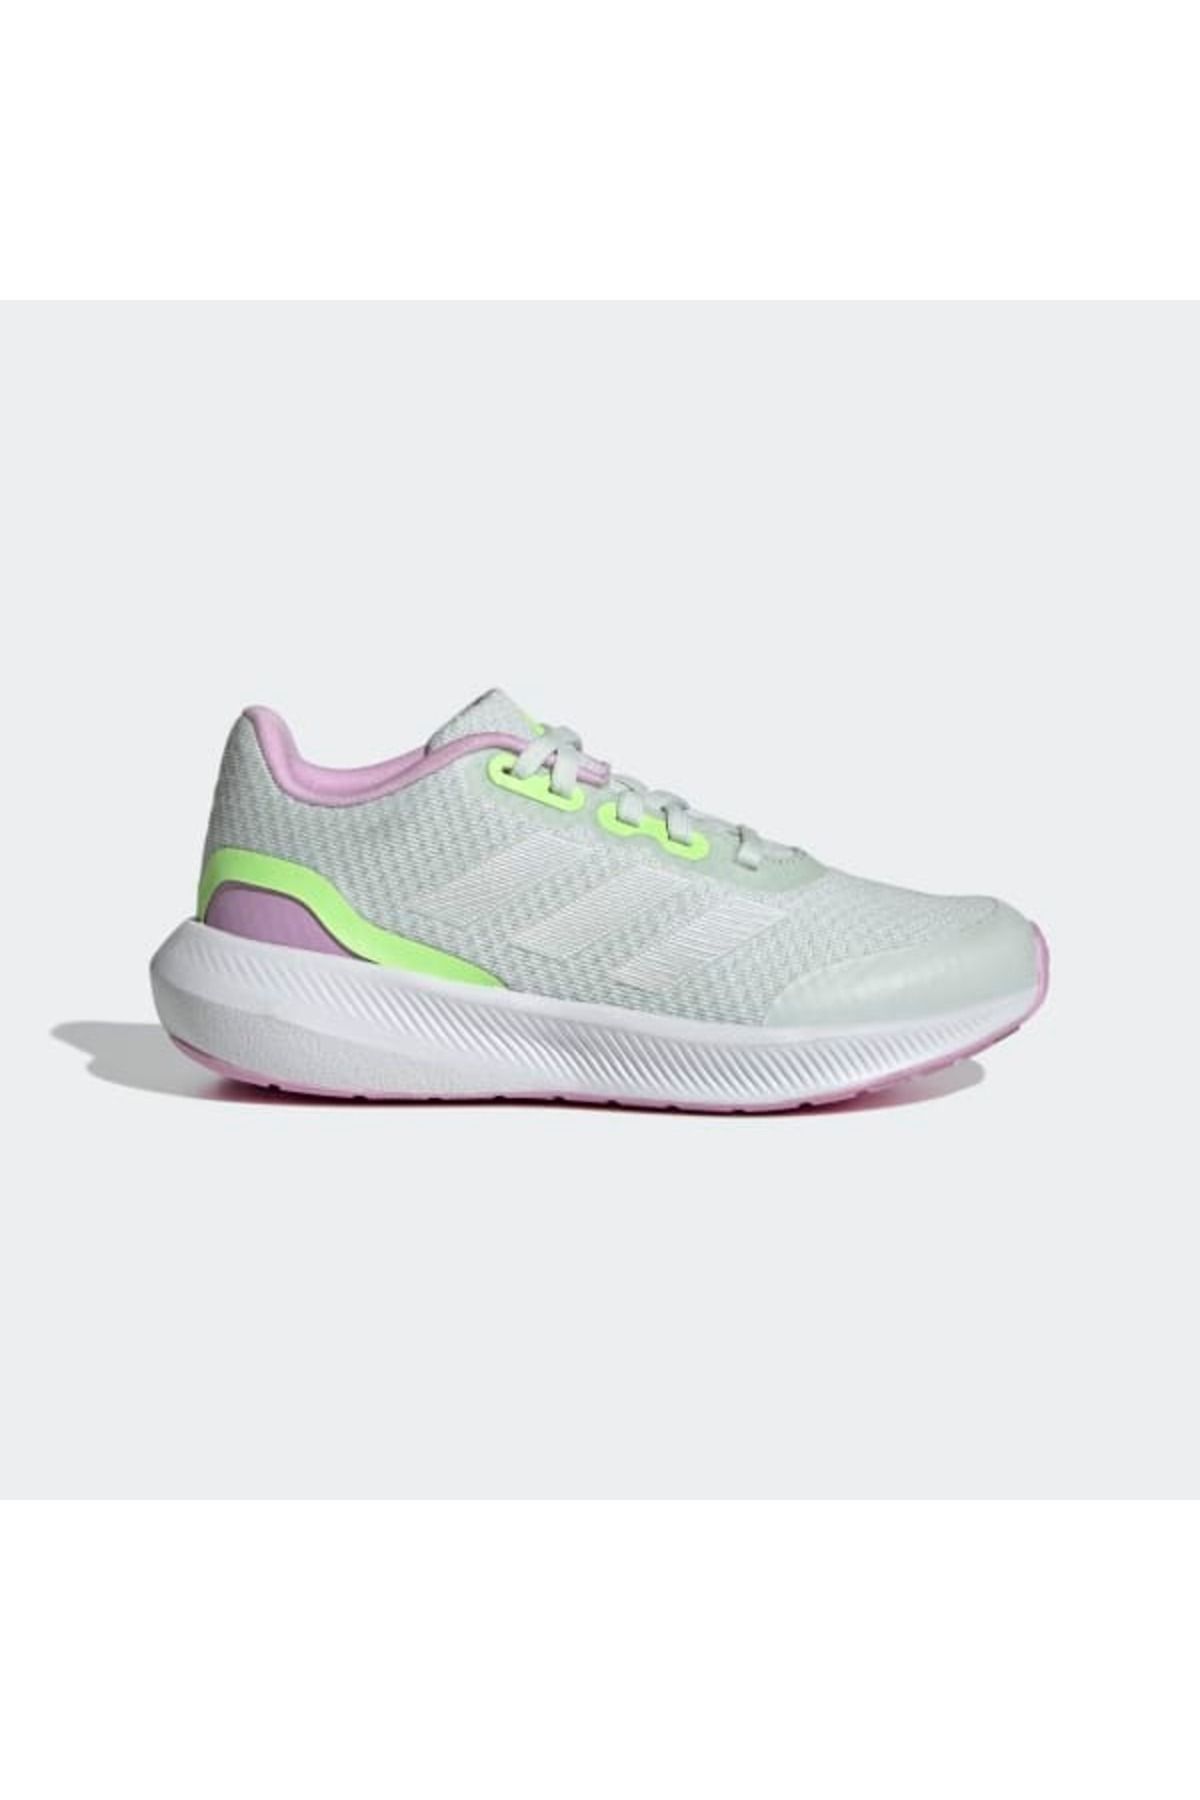 adidas Çocuk Bebek Günlük Sneaker Yürüyüş Ayakkabısı Runfalcon 3.0 K Id0592